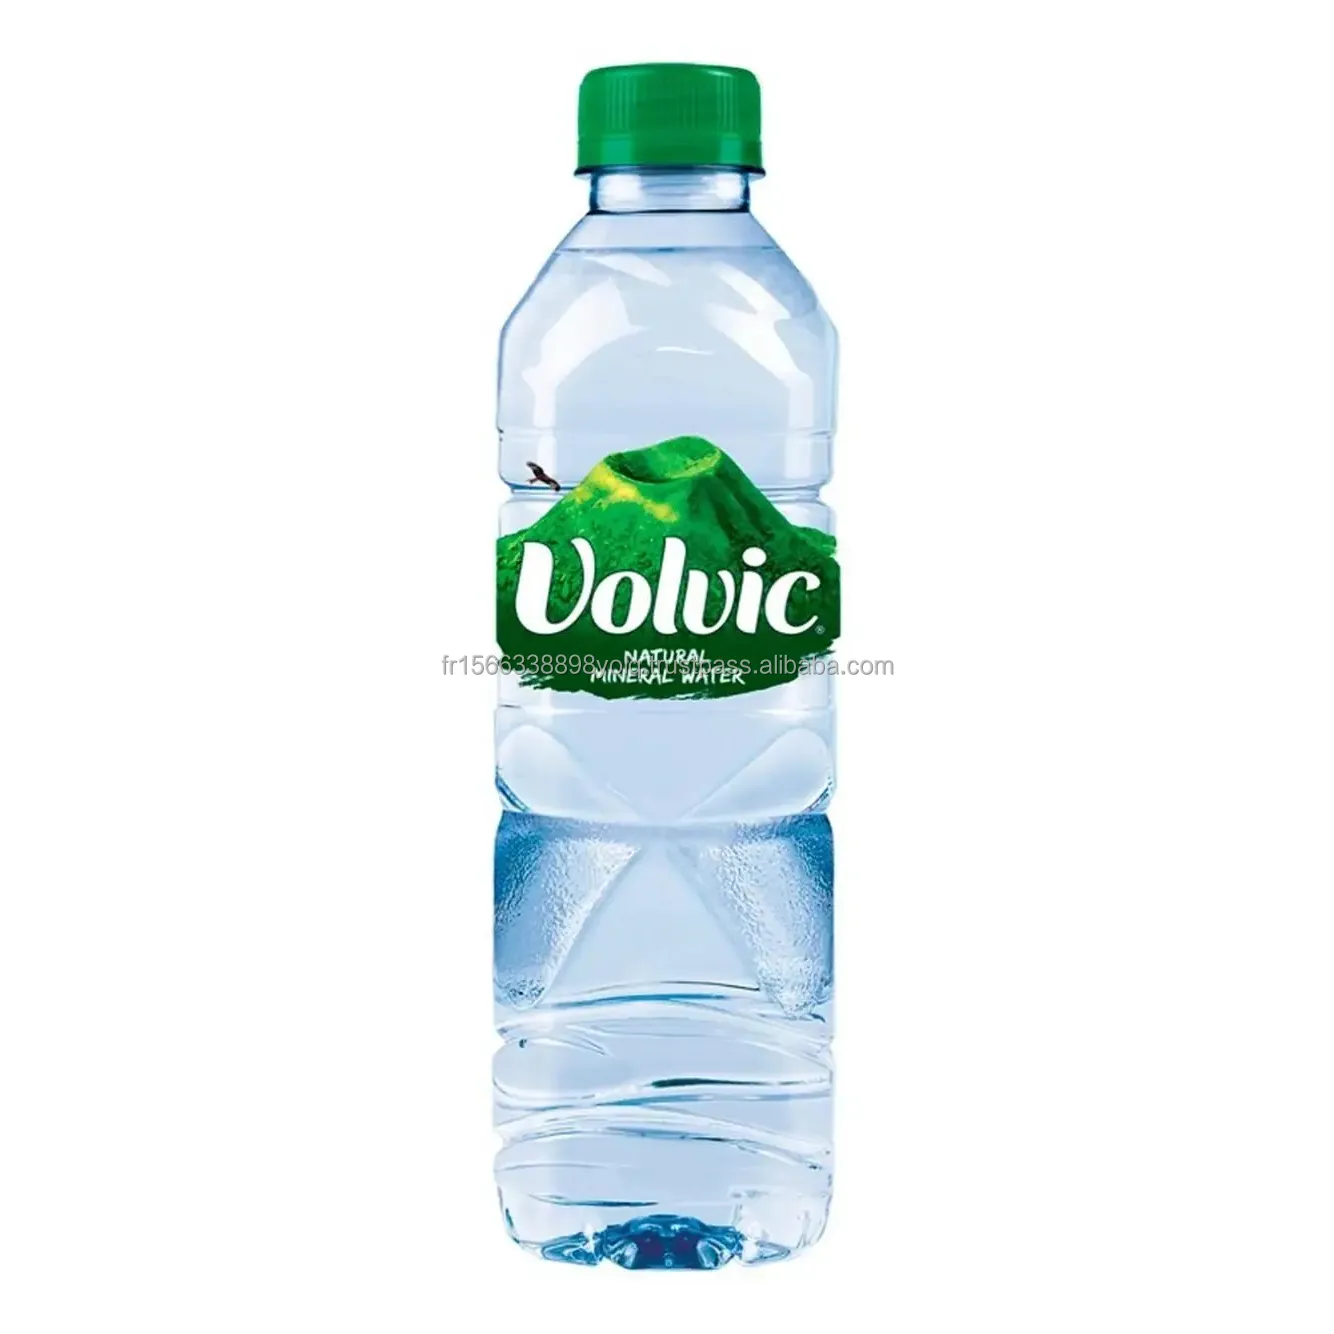 Eau naturelle Volvic Eau minérale potable Source durable et bouteille d'eau Volvican Spirited Boîte de 24 bouteilles Volvic de 500ml